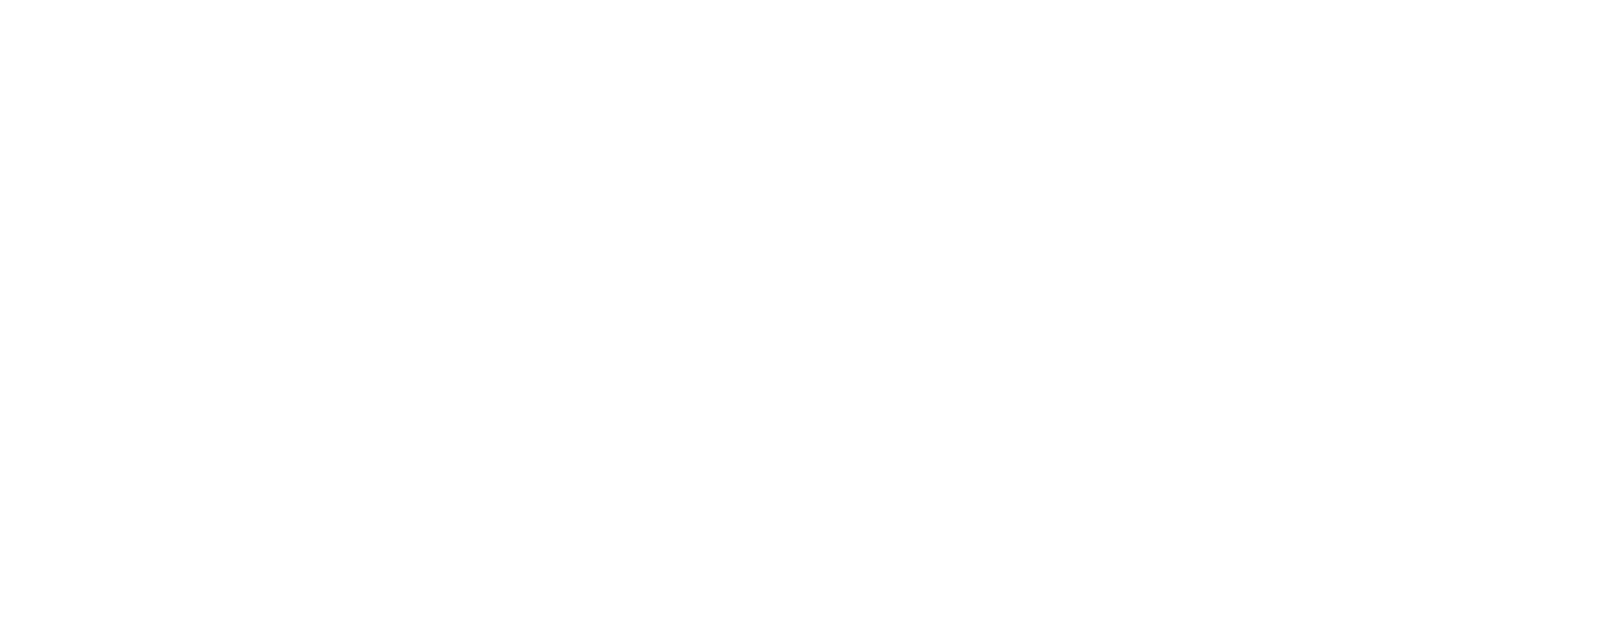 平成24年(2012年)2月に海外に向け神戸ビーフが初輸出されてから、輸出国並びに指定登録店は順調に拡大しています。神戸肉流通推進議会では、海外での神戸ビーフブランド管理・需要拡大のため運営委員会を設置し、海外での模倣品・偽物に対するブランド管理の強化と更なる需要拡大を目指しています。委員は以下の通りです。